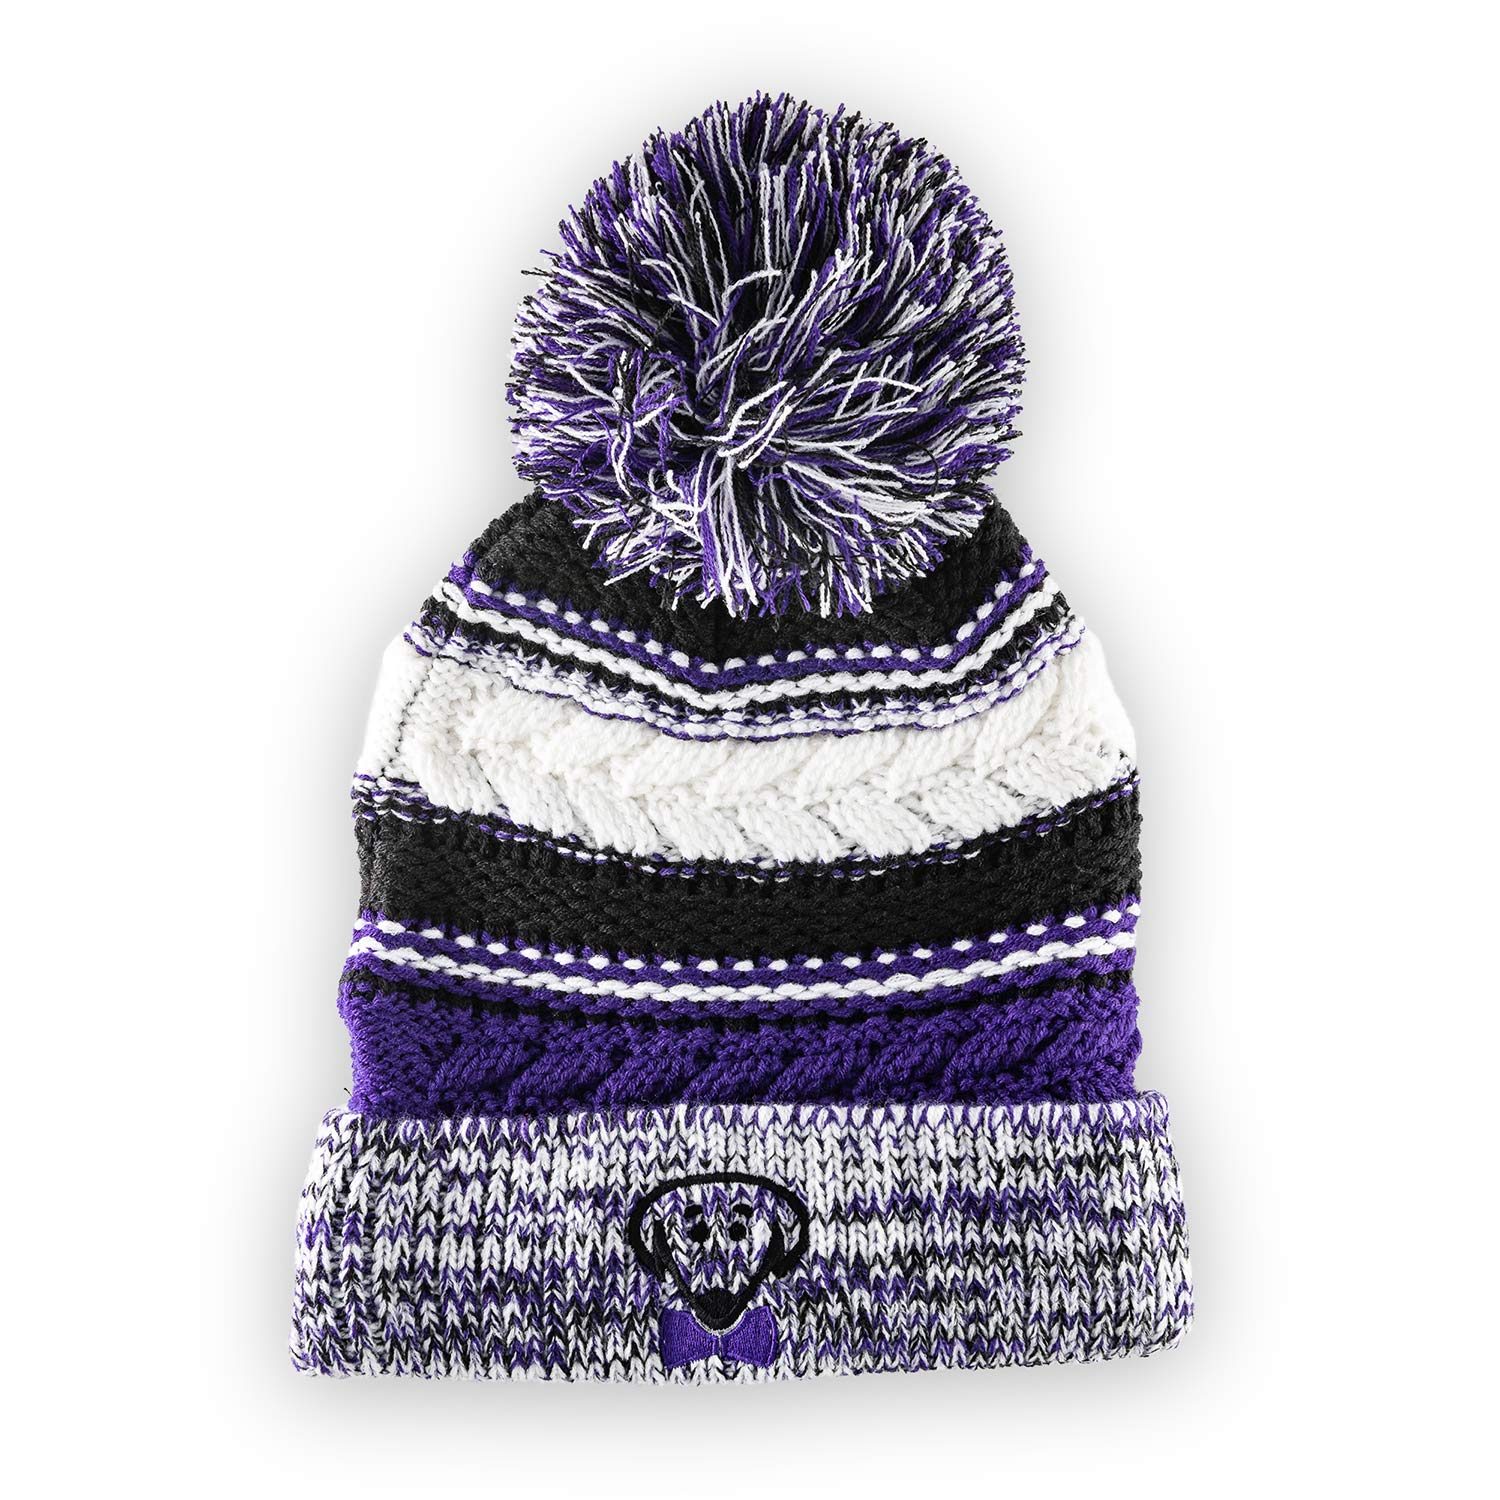 Riley winter big pom knit hat in purple by Beau Tyler